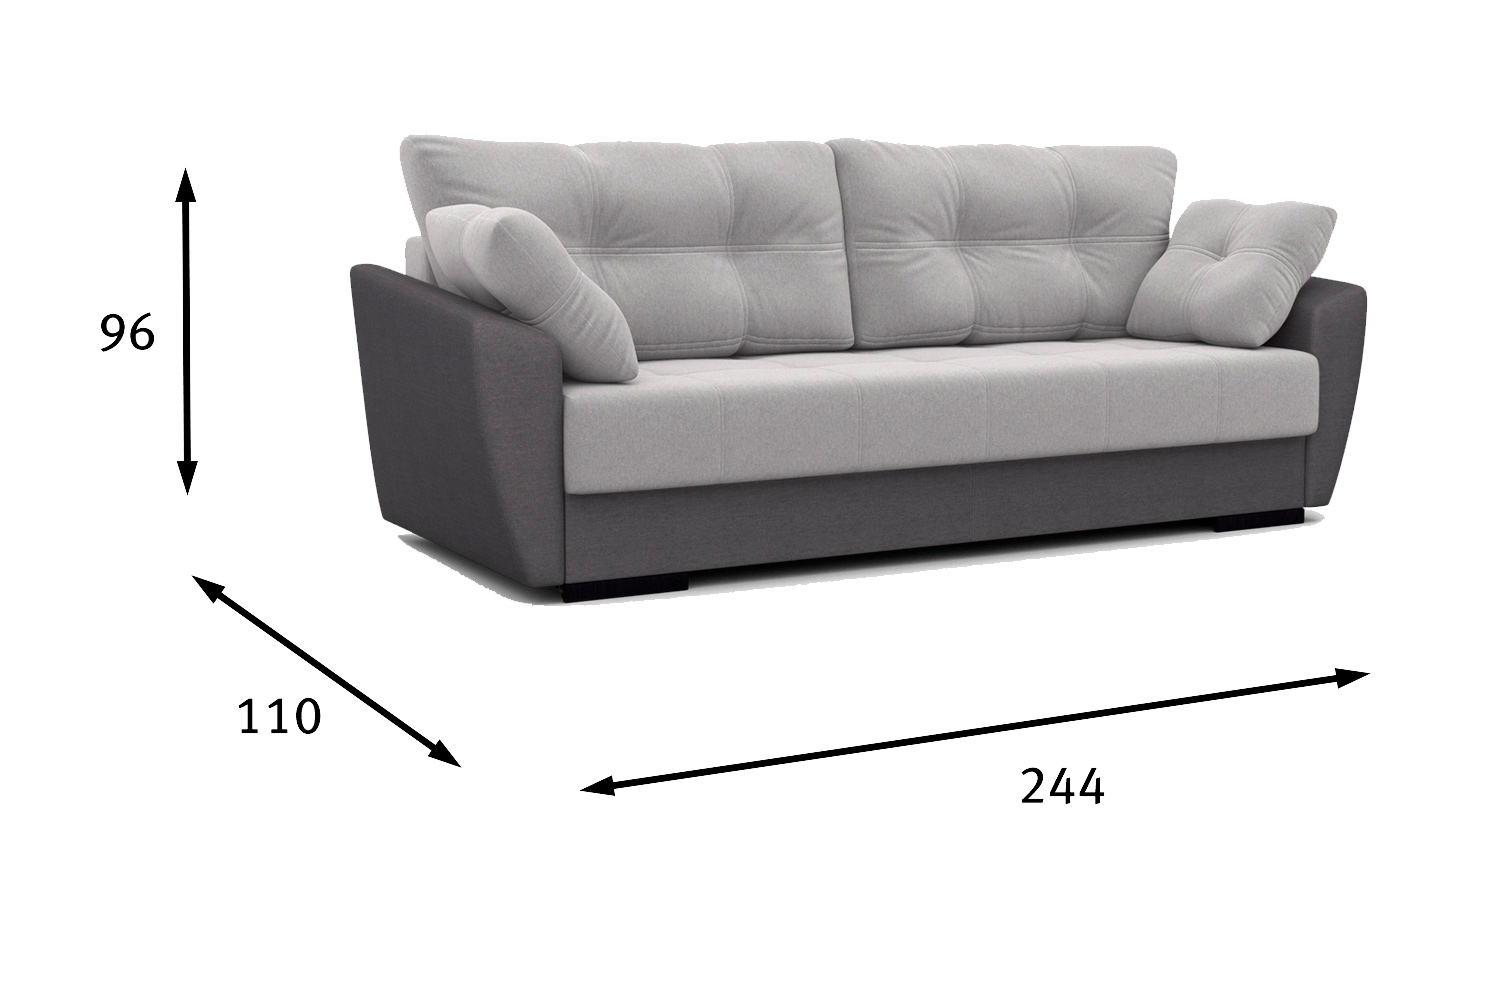 инструкция сборки дивана дубай